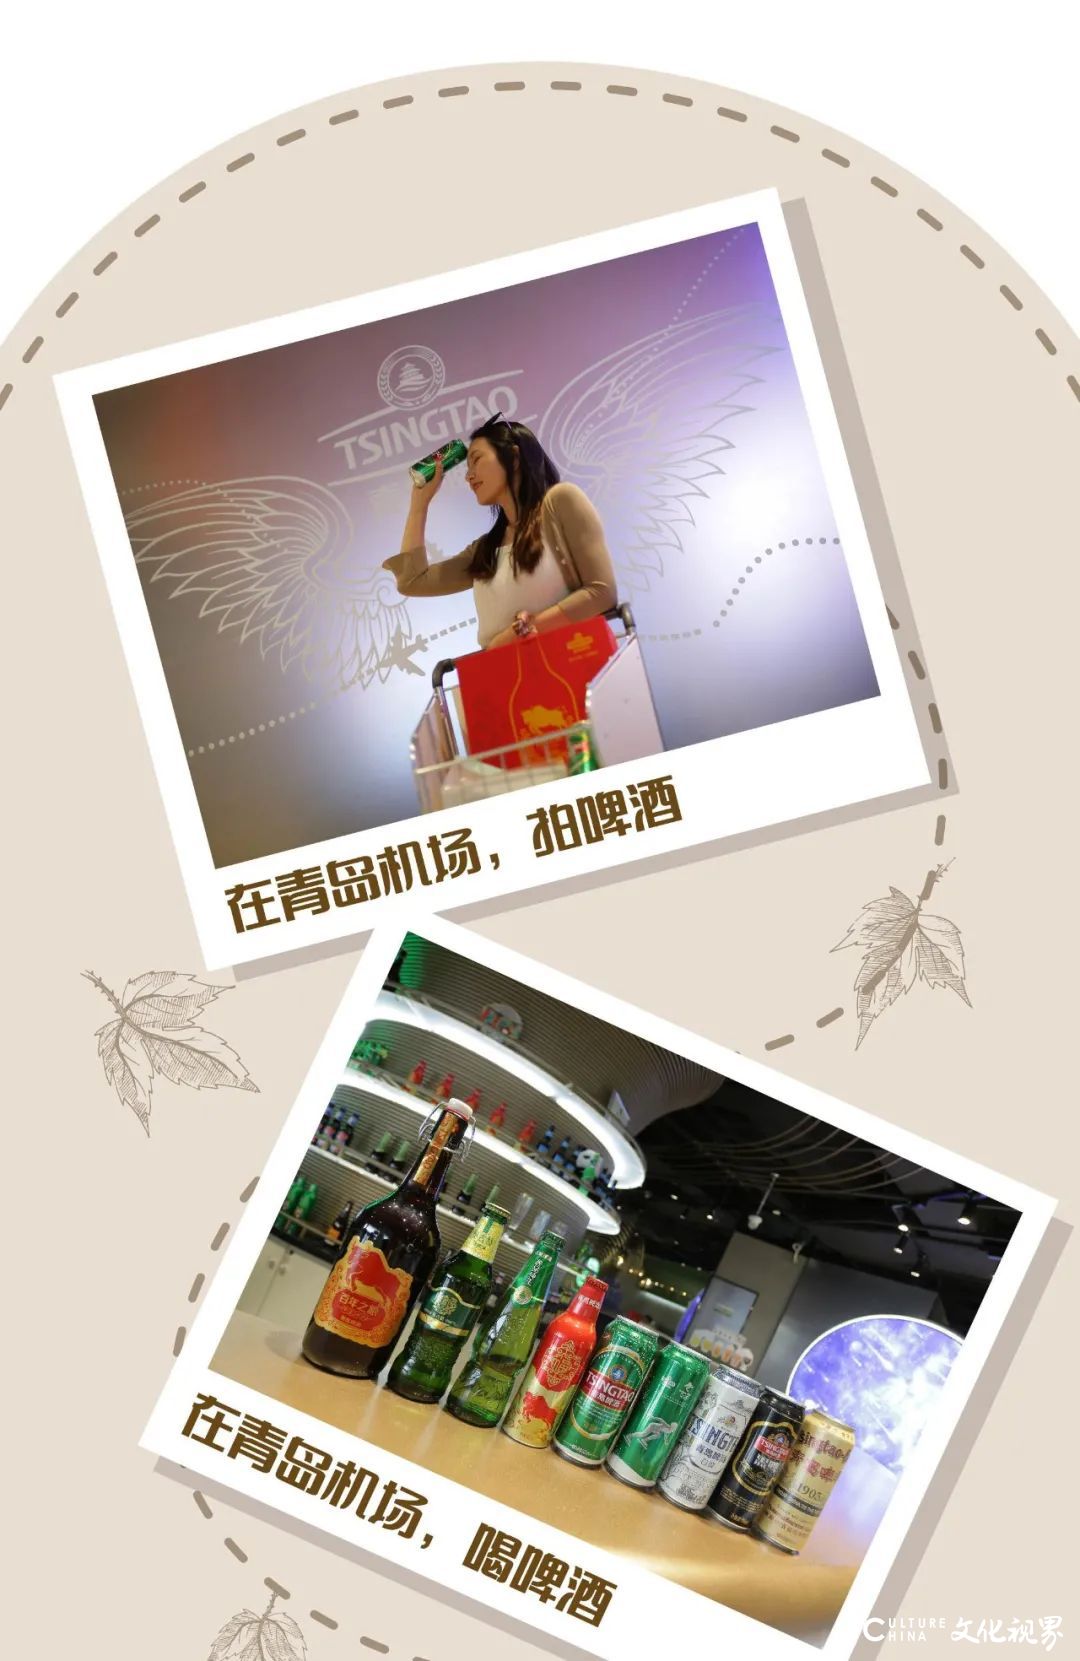 酷炫入驻青岛胶东国际机场，青岛啤酒的 “醉美候机室”抢先看